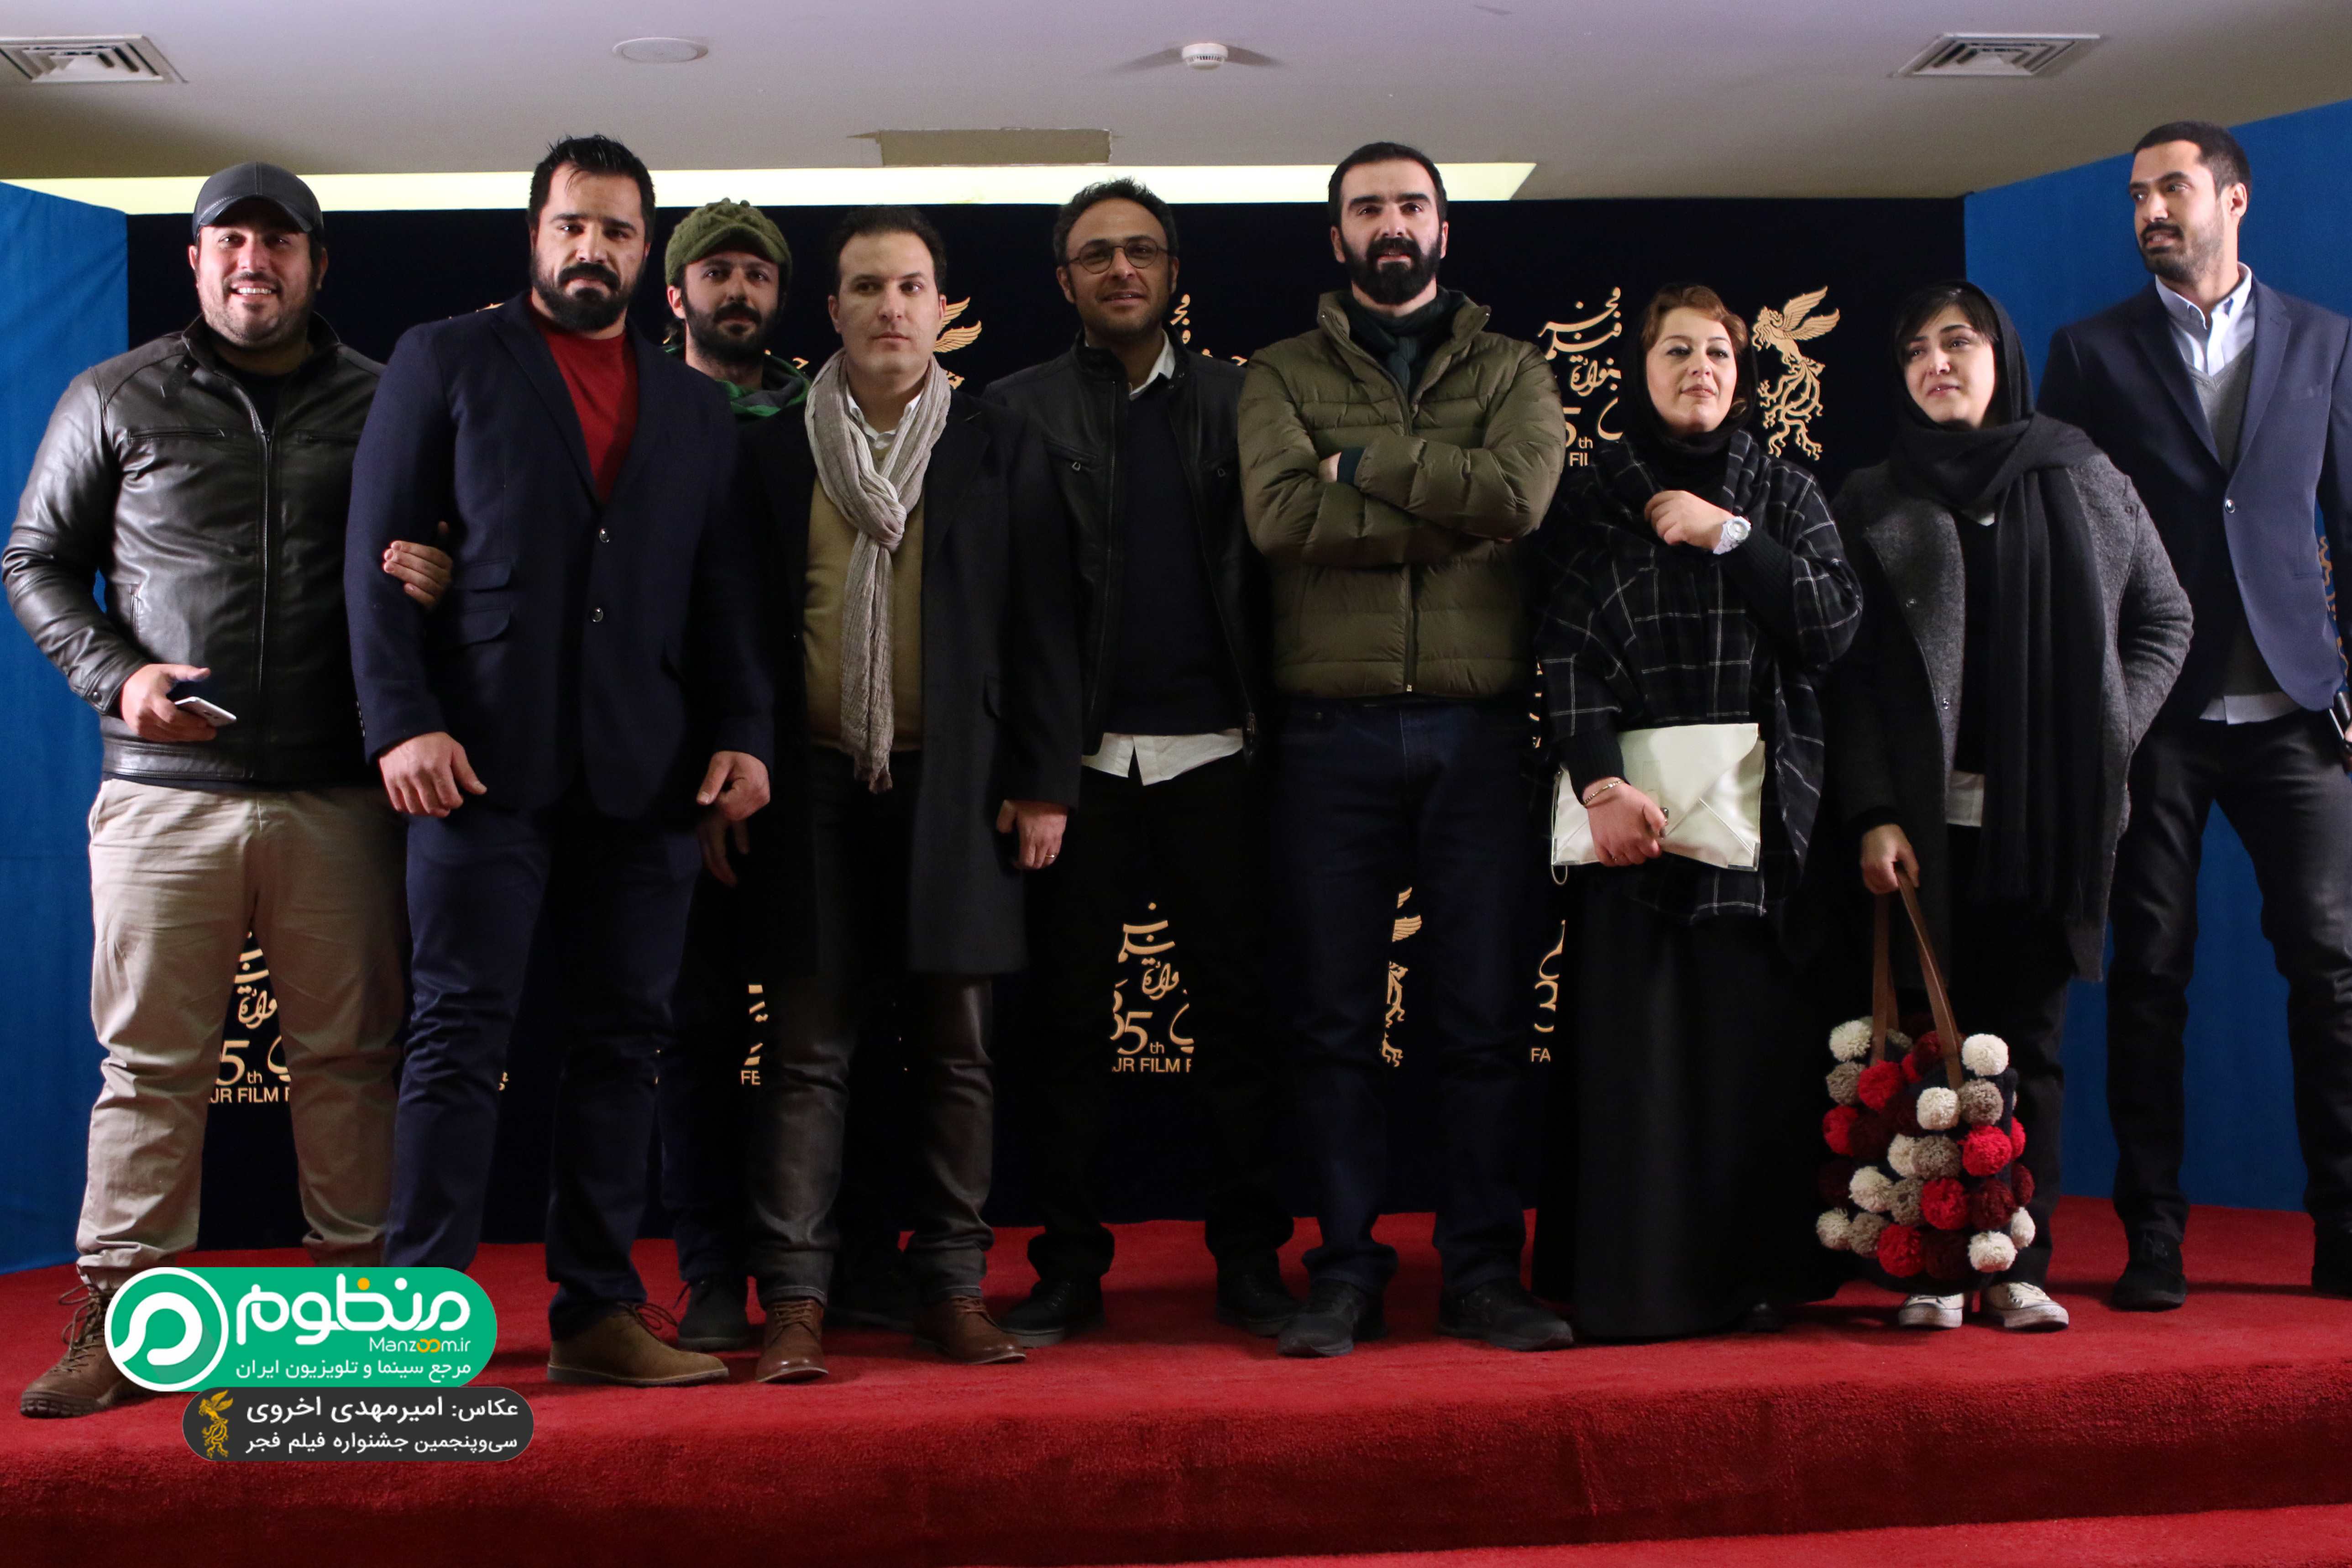 علیرضا کمالی در فرش قرمز فیلم سینمایی سد معبر به همراه محسن کیایی، باران کوثری، محسن قرایی و سپیده عبدالوهاب